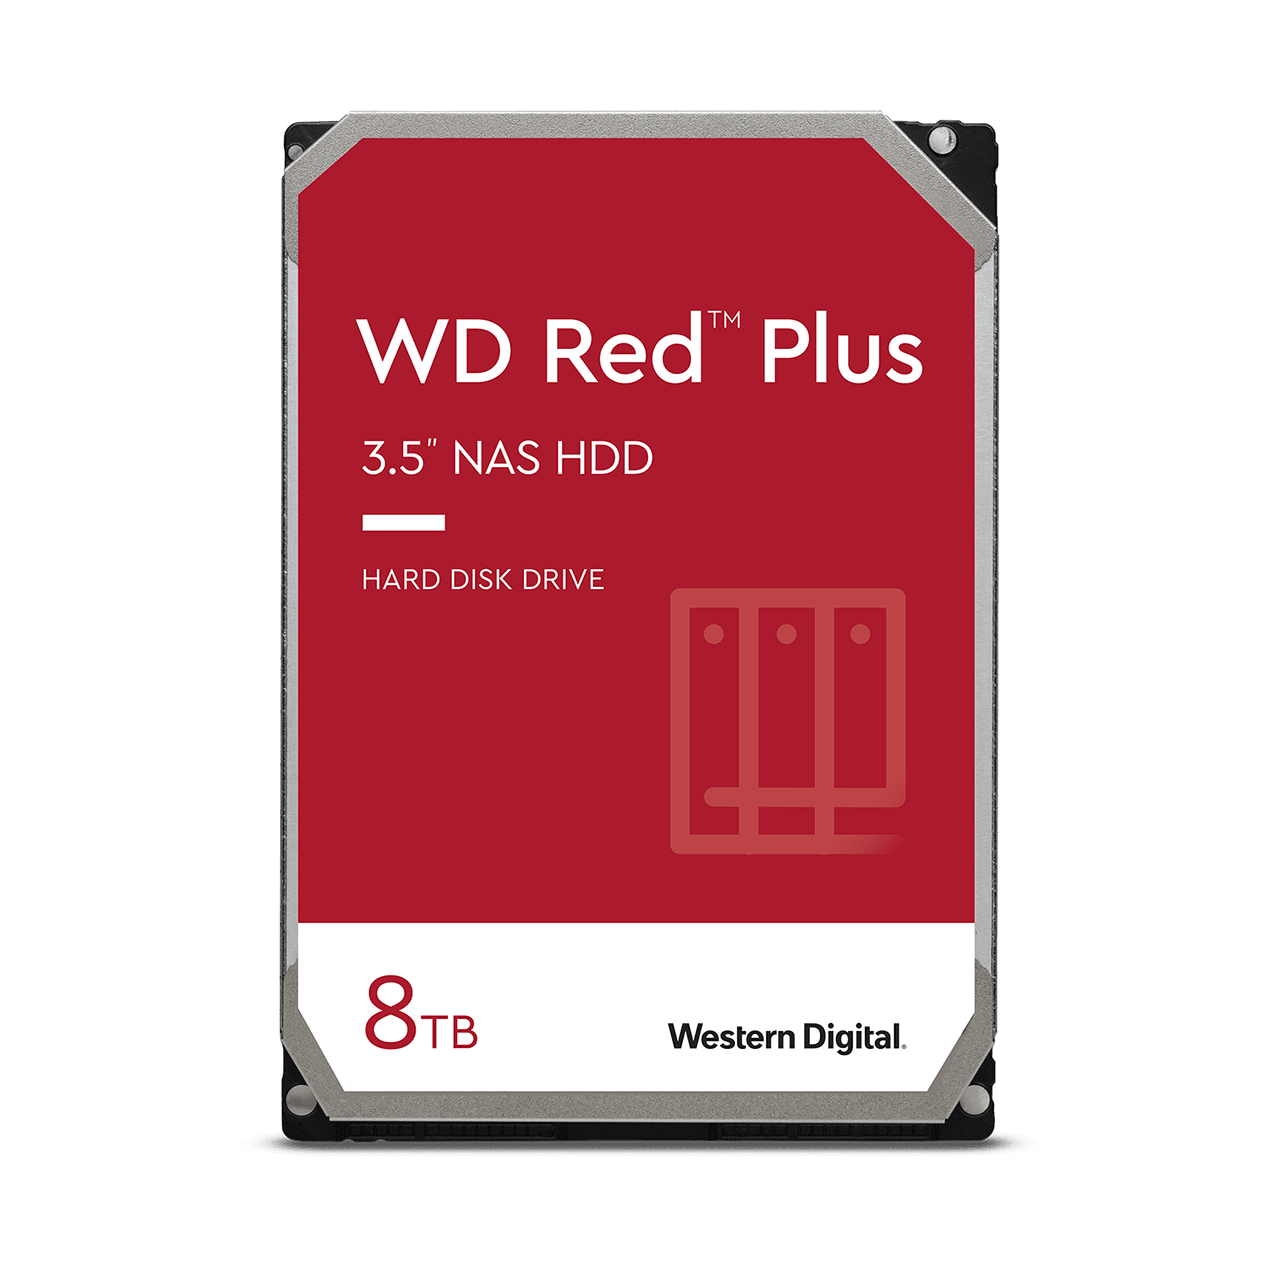 wd-red-plus-sata-3-5-hdd-8tb.thumb.1280.1280